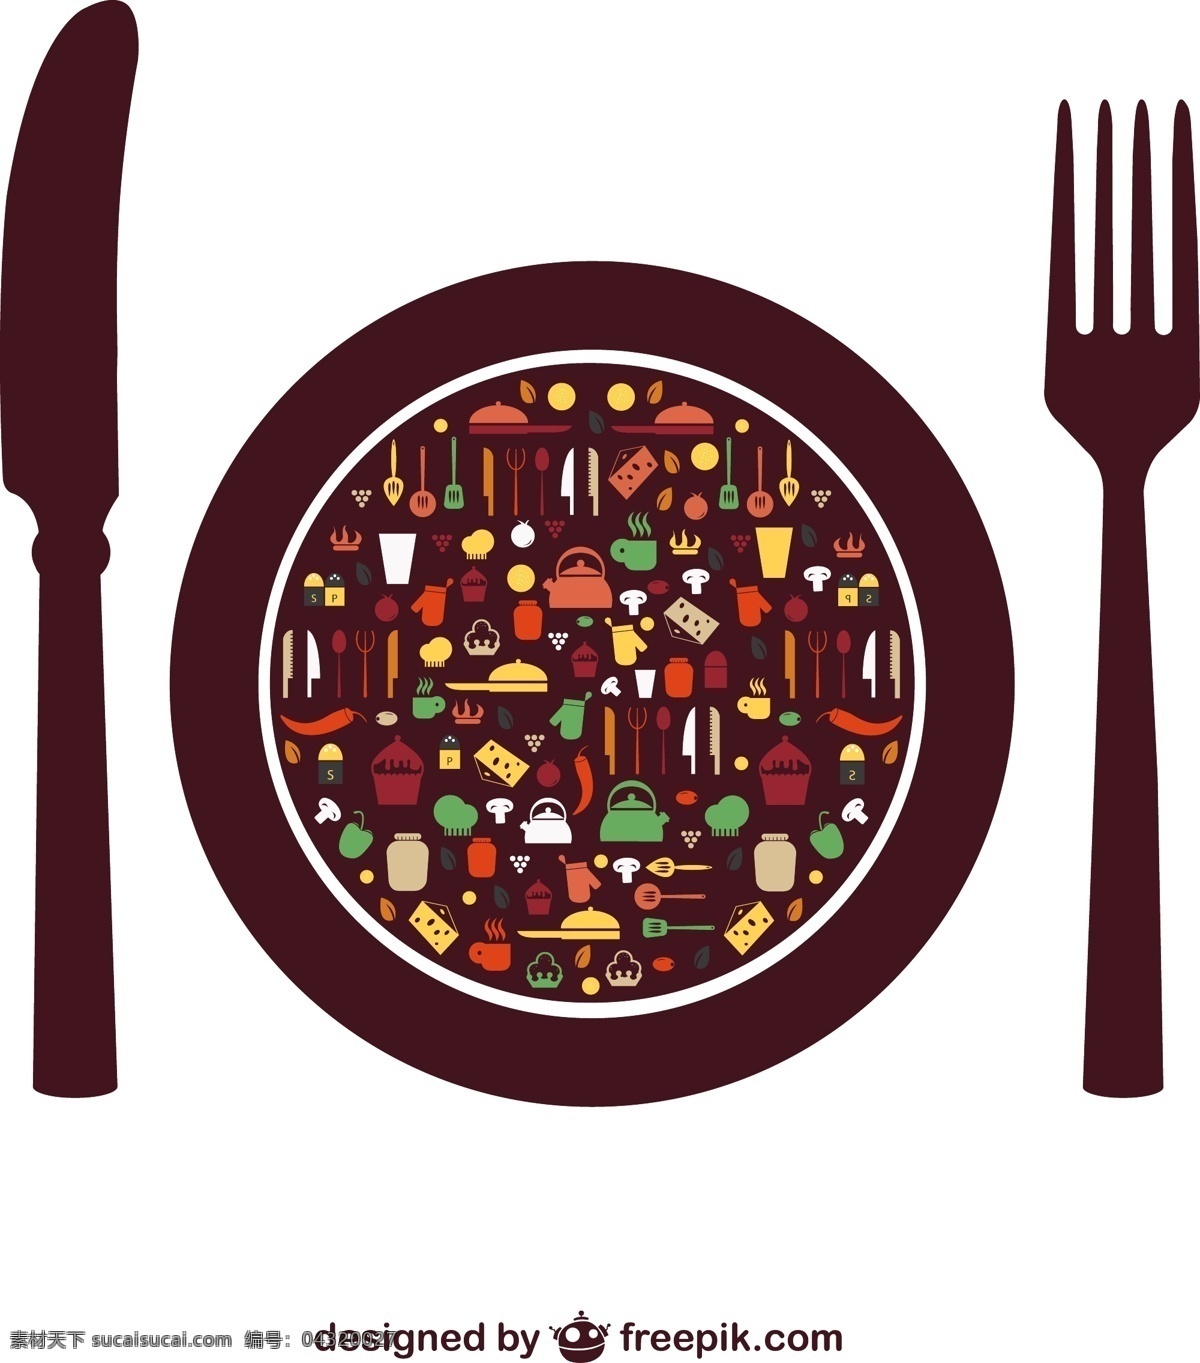 刀叉 餐饮 餐饮logo 刀 叉 餐饮元素 餐饮标识 菜单 菜单设计 矢量图片 矢量素材 其他矢量 矢量